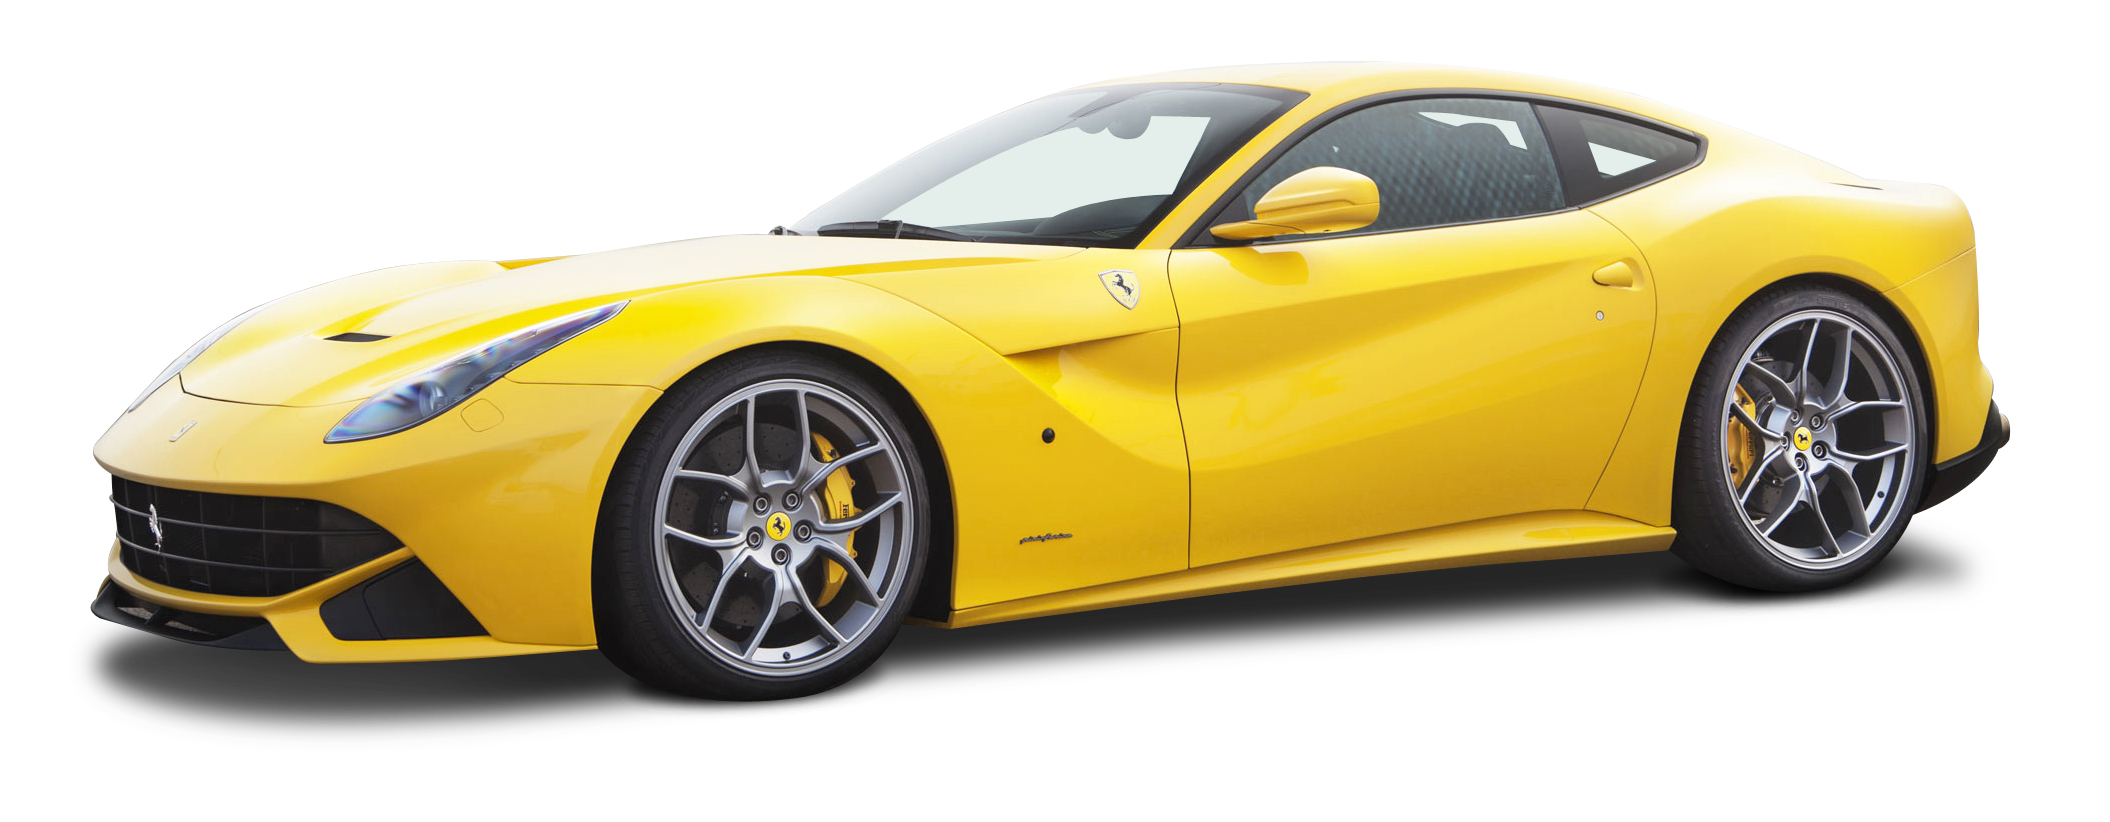 Visualizzazione laterale Giallo Ferrari PNG Immagine